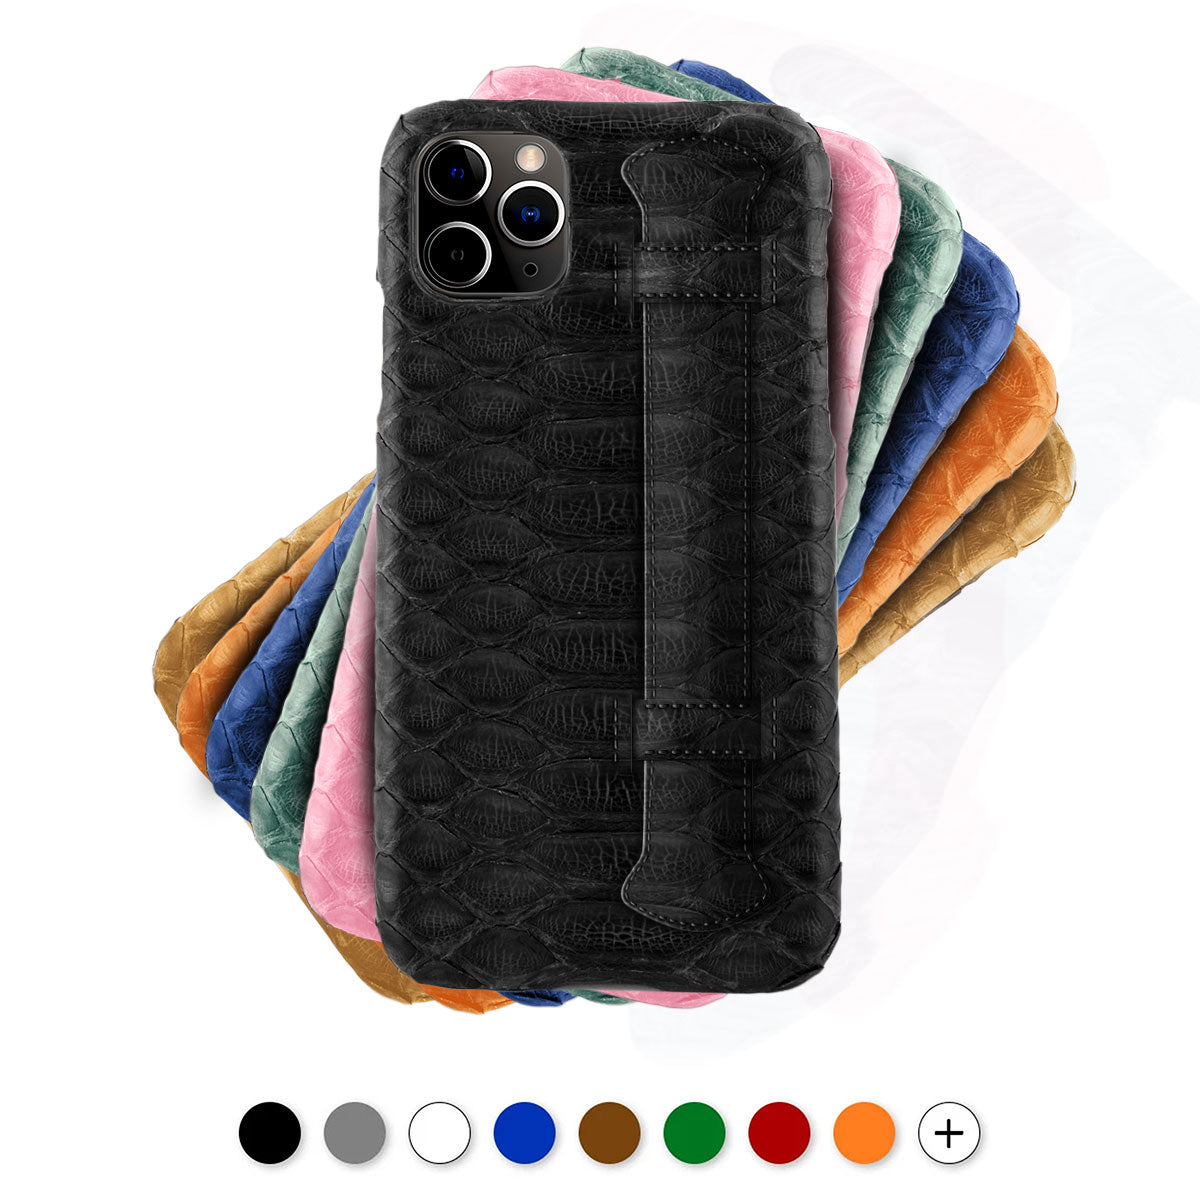 Coque cuir " strap case " pour iPhone -  iPhone 12 et 11 ( Pro / Max / Mini ) - Python